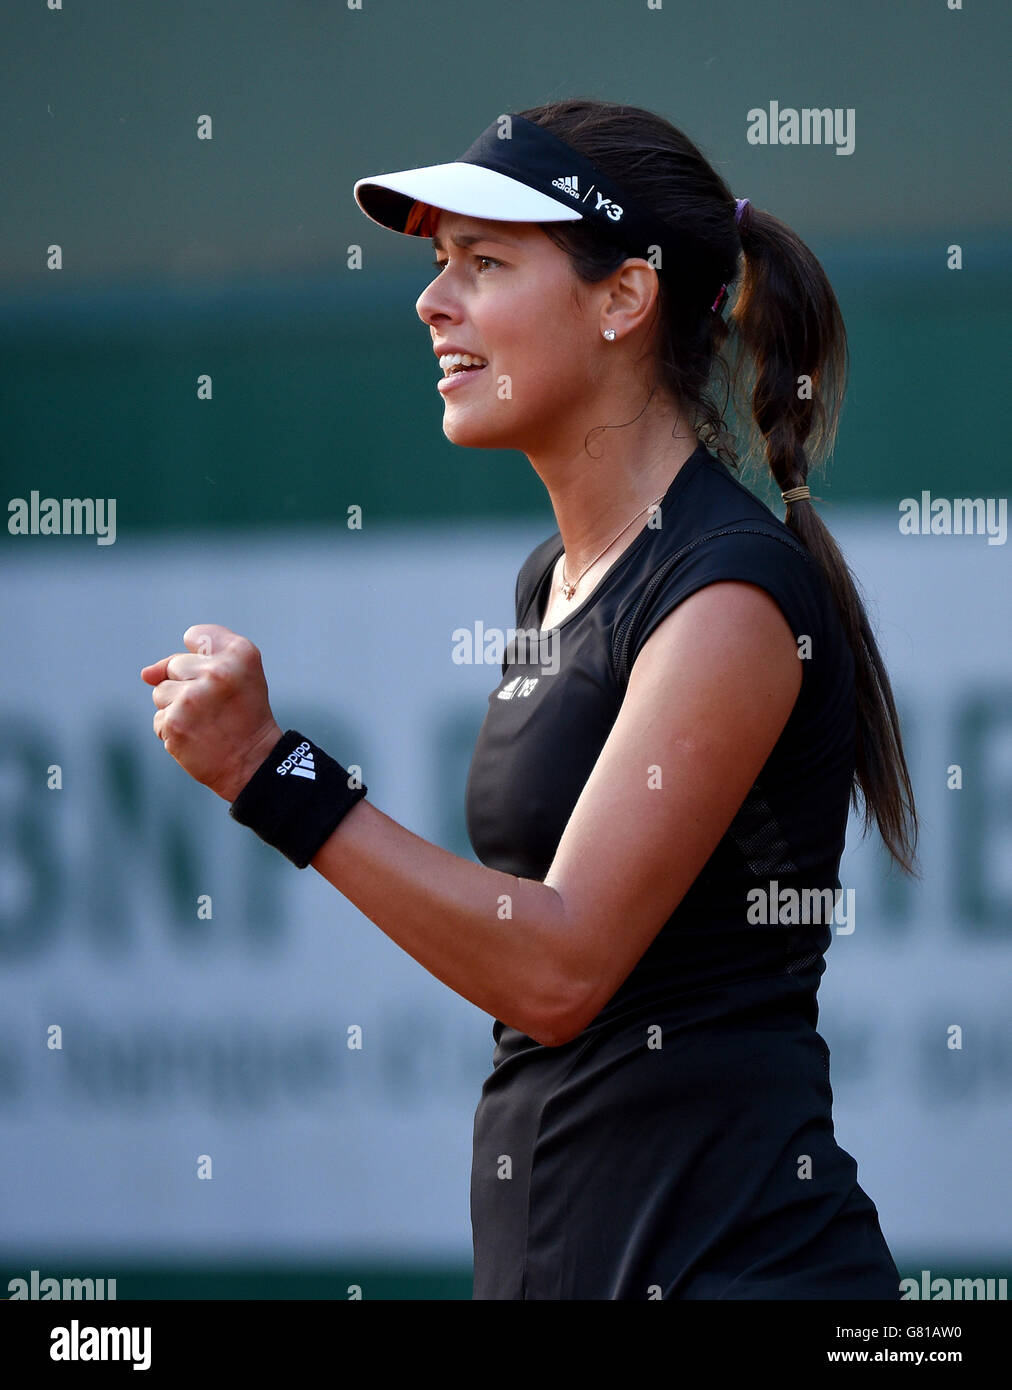 Ana Ivanovic en action lors de son deuxième tour de femmes célibataires match contre Misaki Doi le quatrième jour de l'Open de France à Roland Garros le 27 mai 2015 à Paris, France Banque D'Images